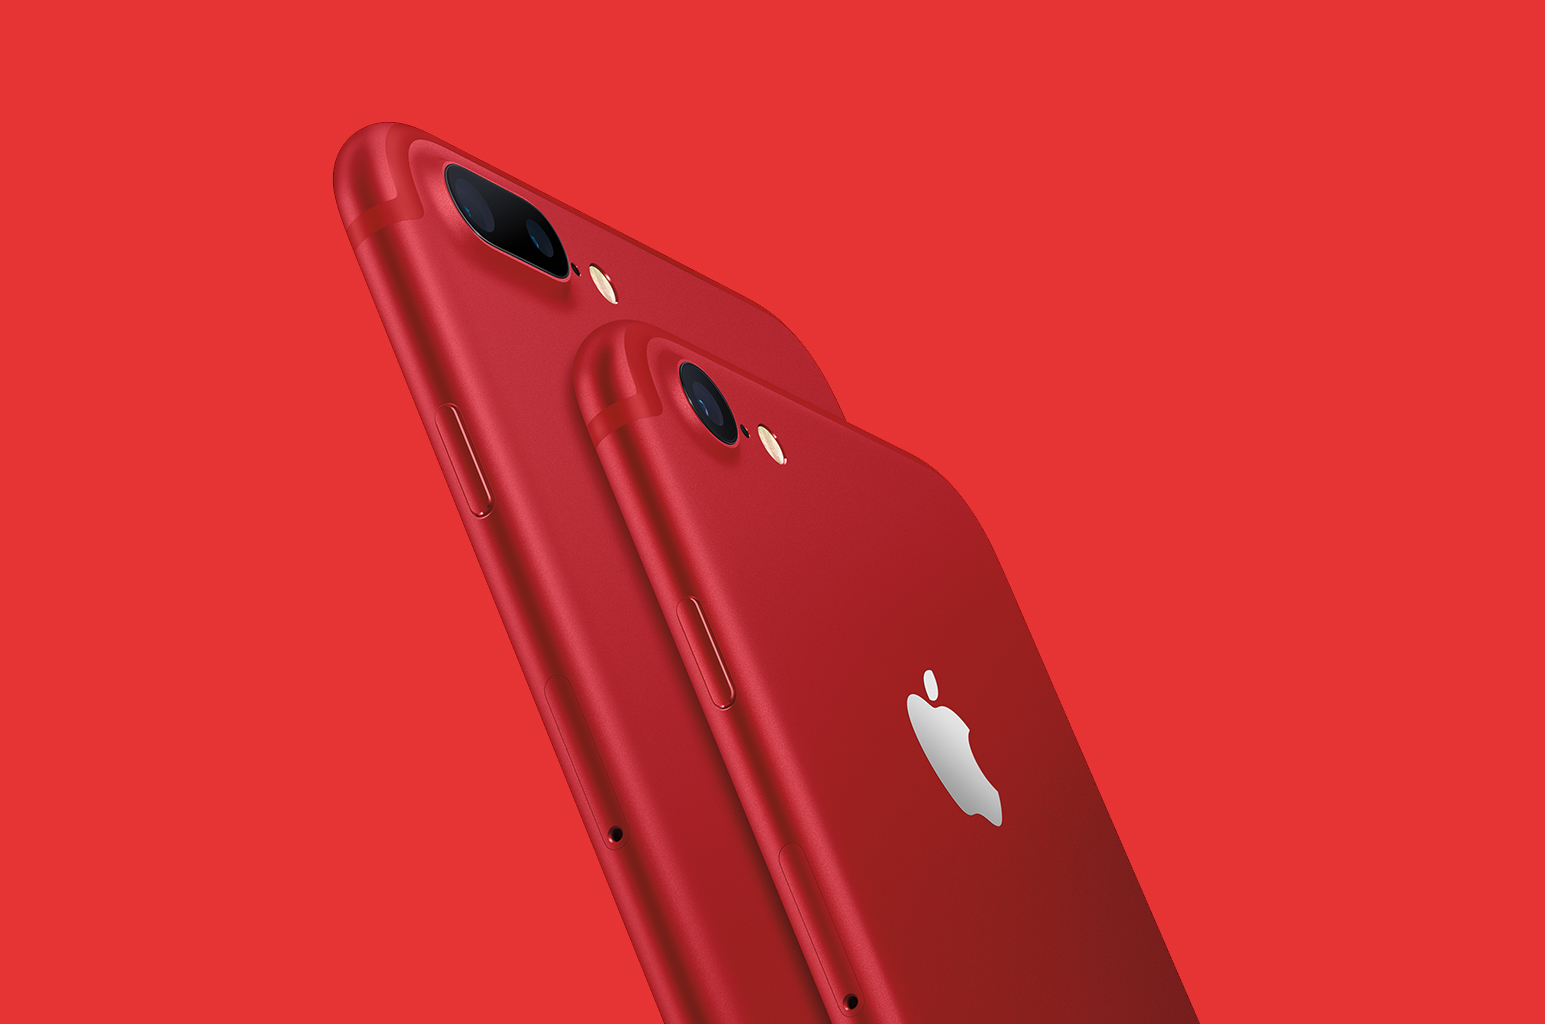 紅色 iPhone 8